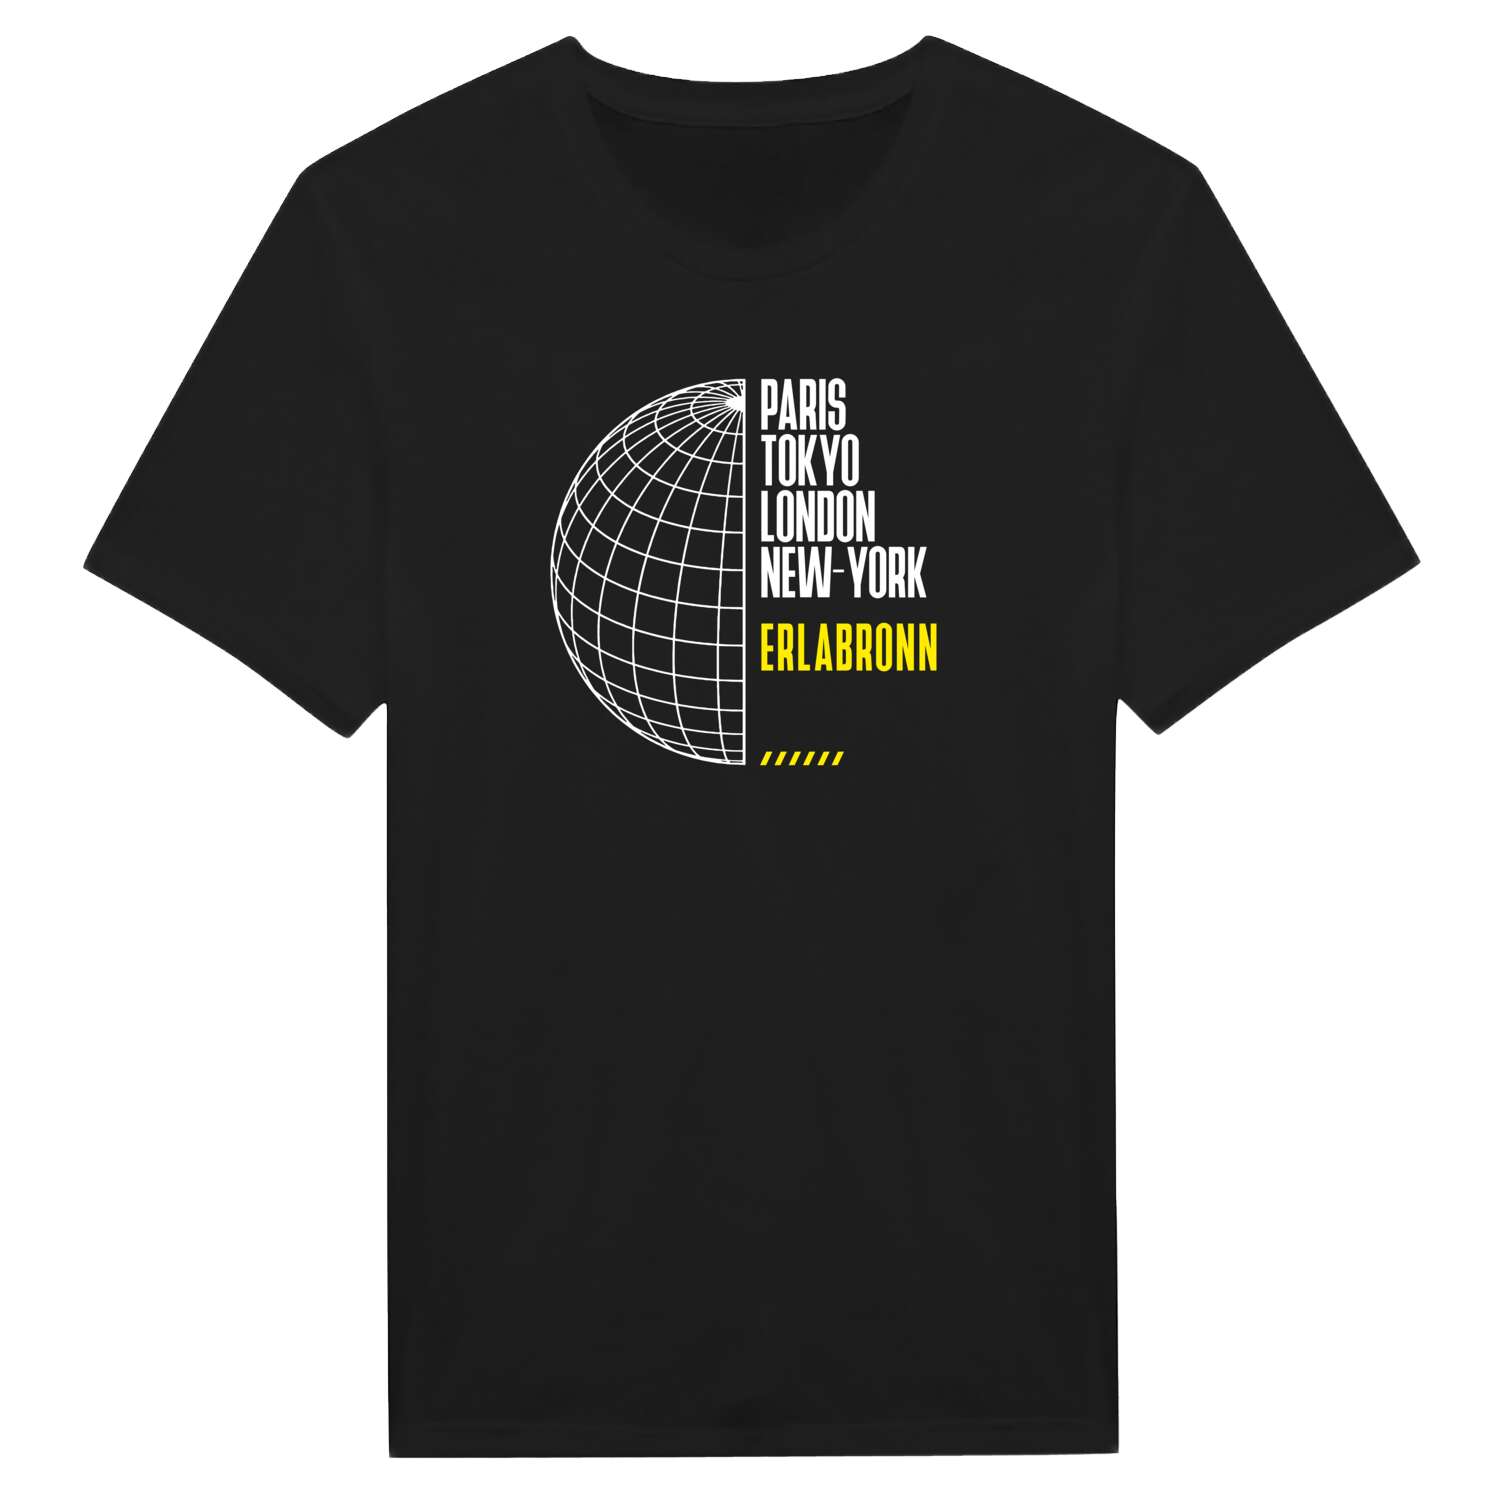 Erlabronn T-Shirt »Paris Tokyo London«